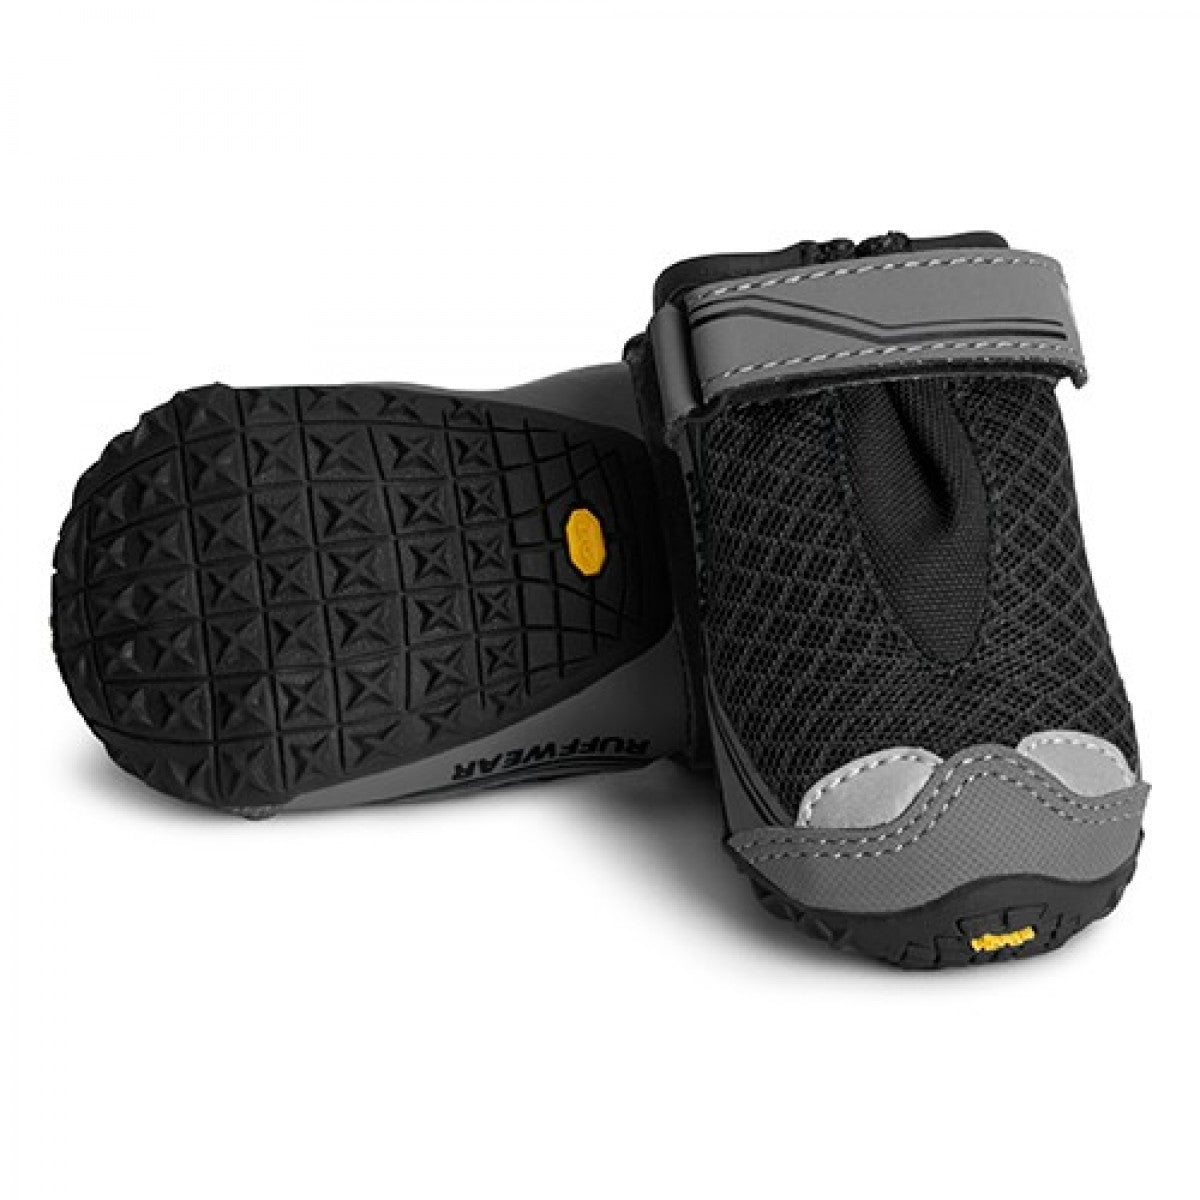 Ruffwear - Grip Trex Boots - Obsidian Black (2 Boots)